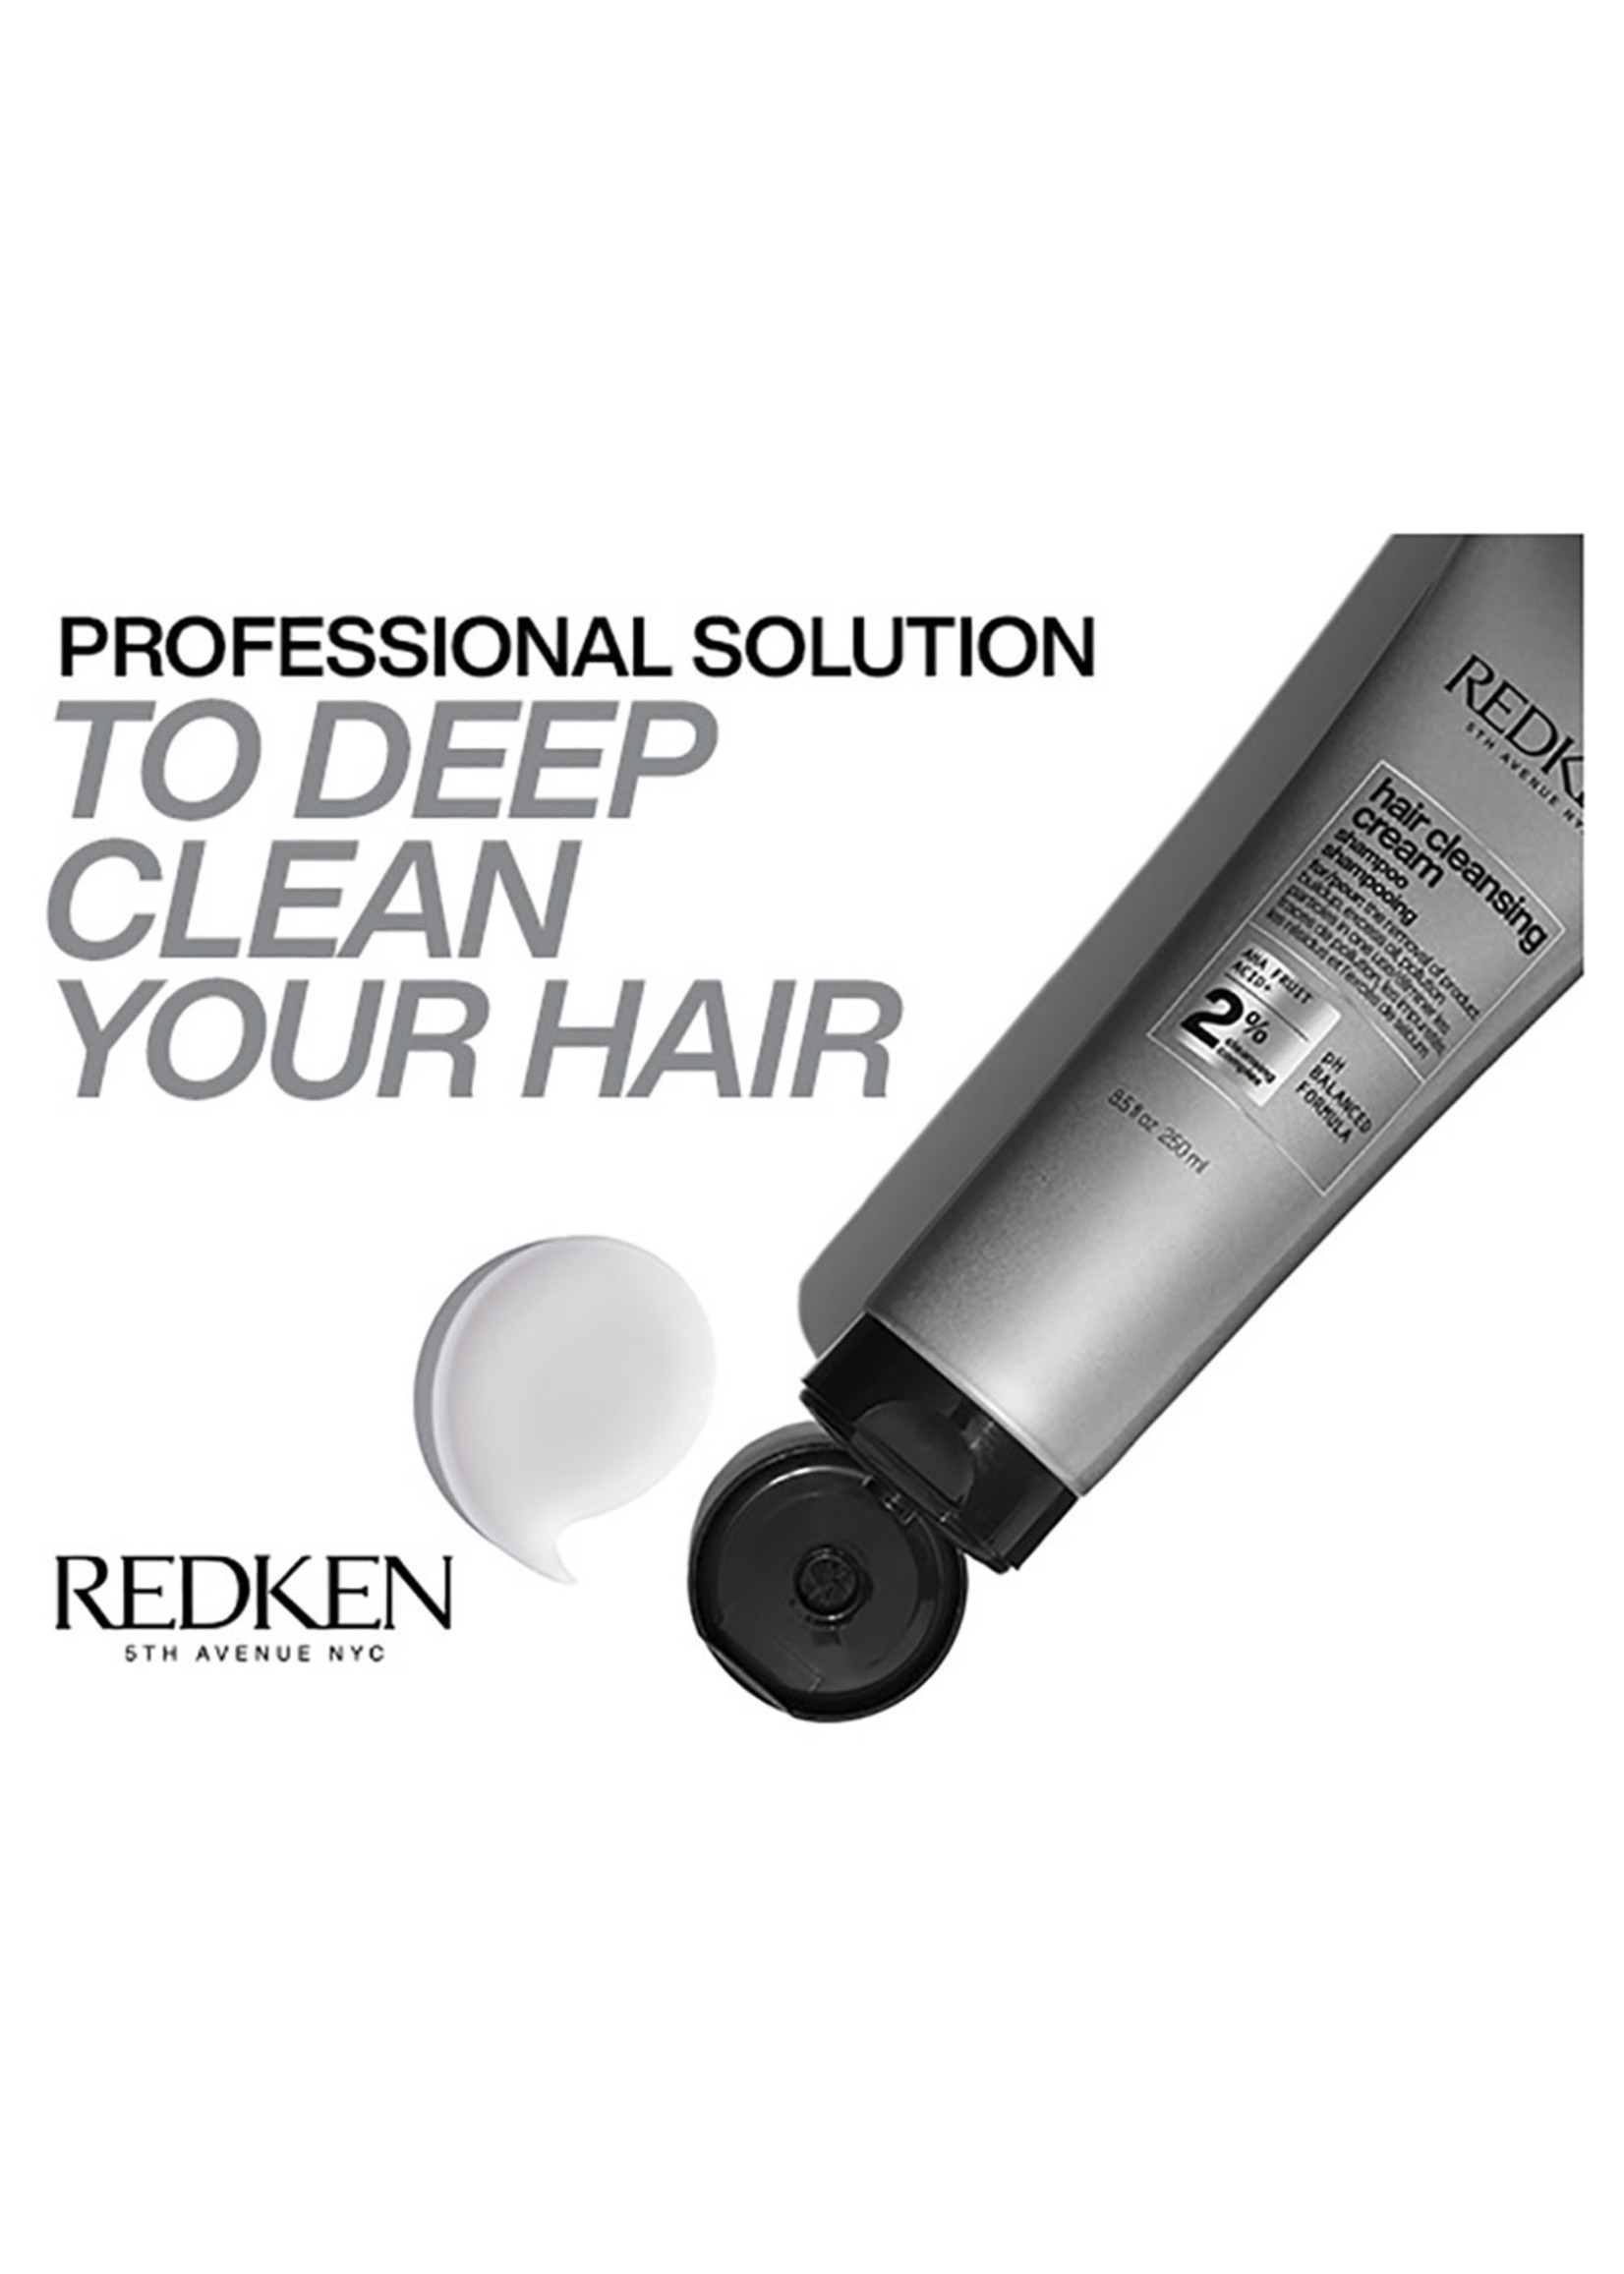 Redken Redken Hair Cleansing Cream Shampoo 250ml